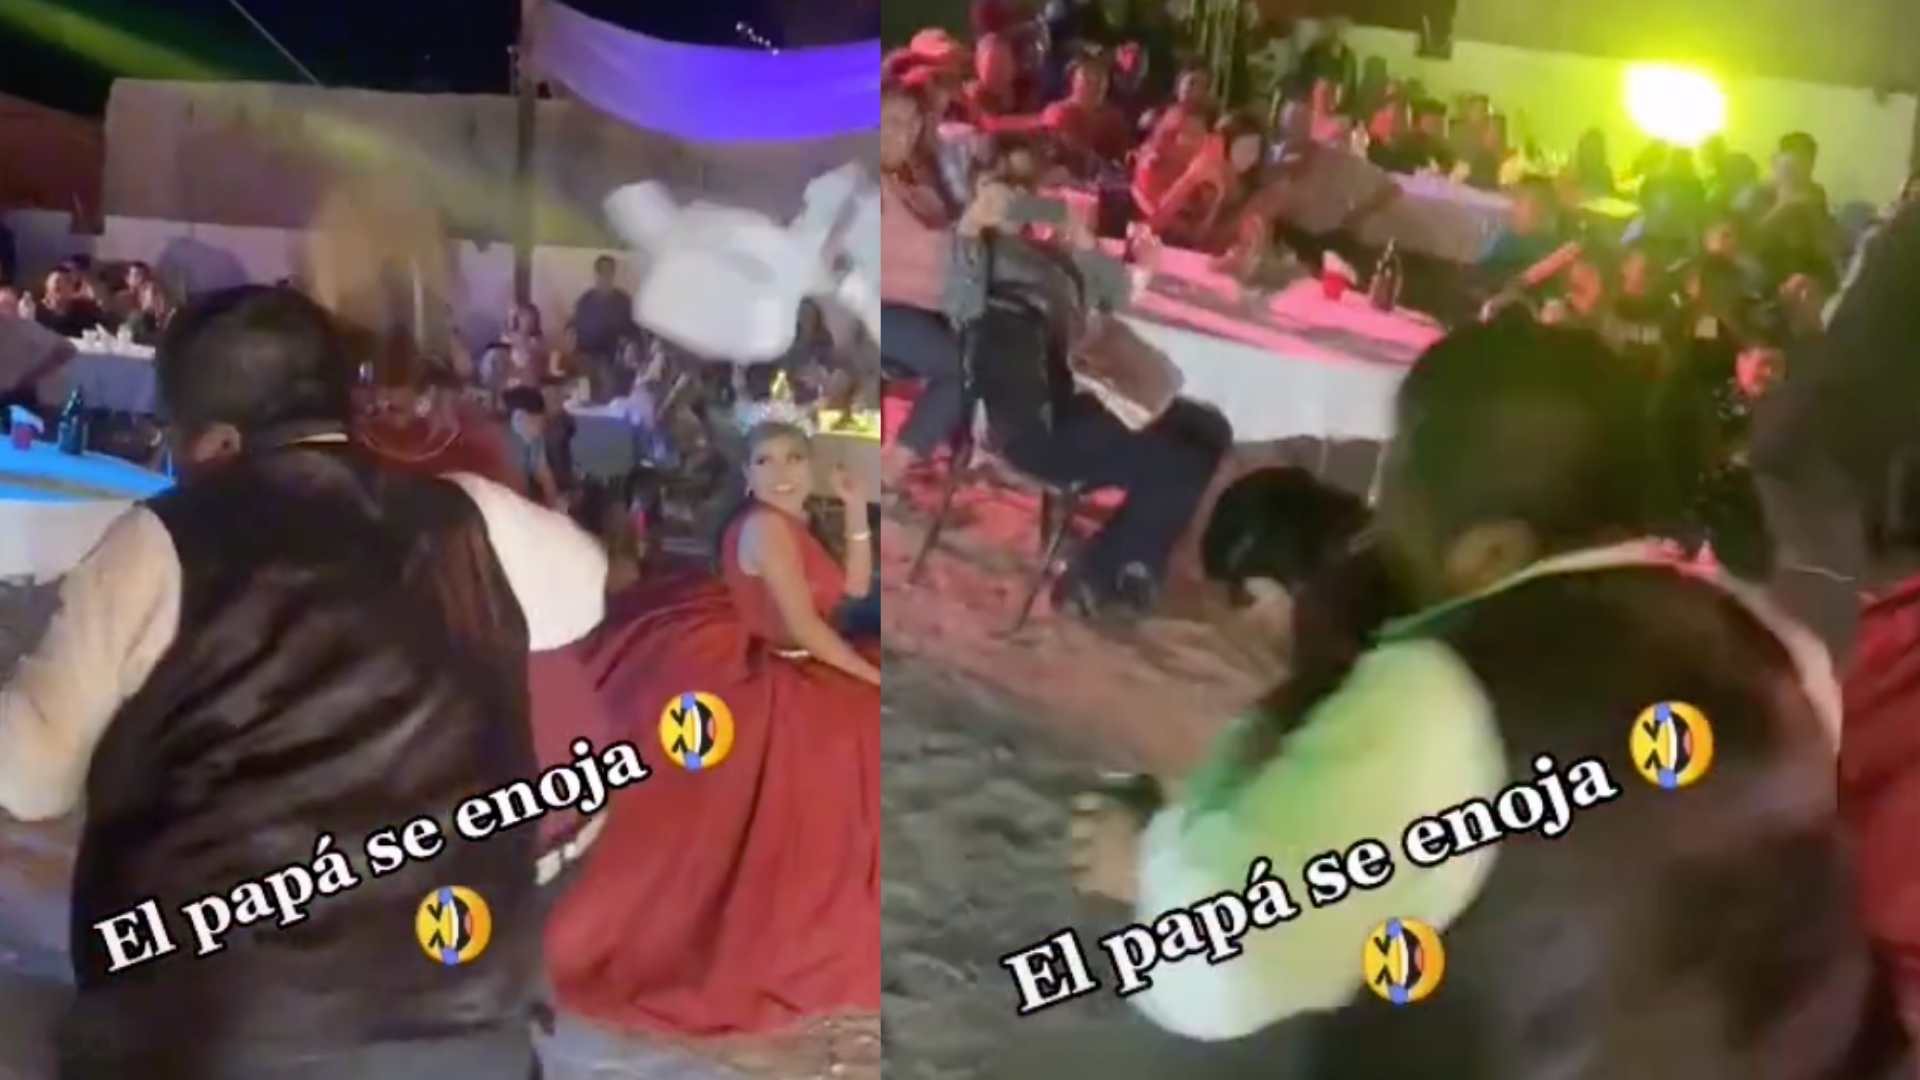 Papá se enoja en plena fiesta de XV por bailable "sexy"